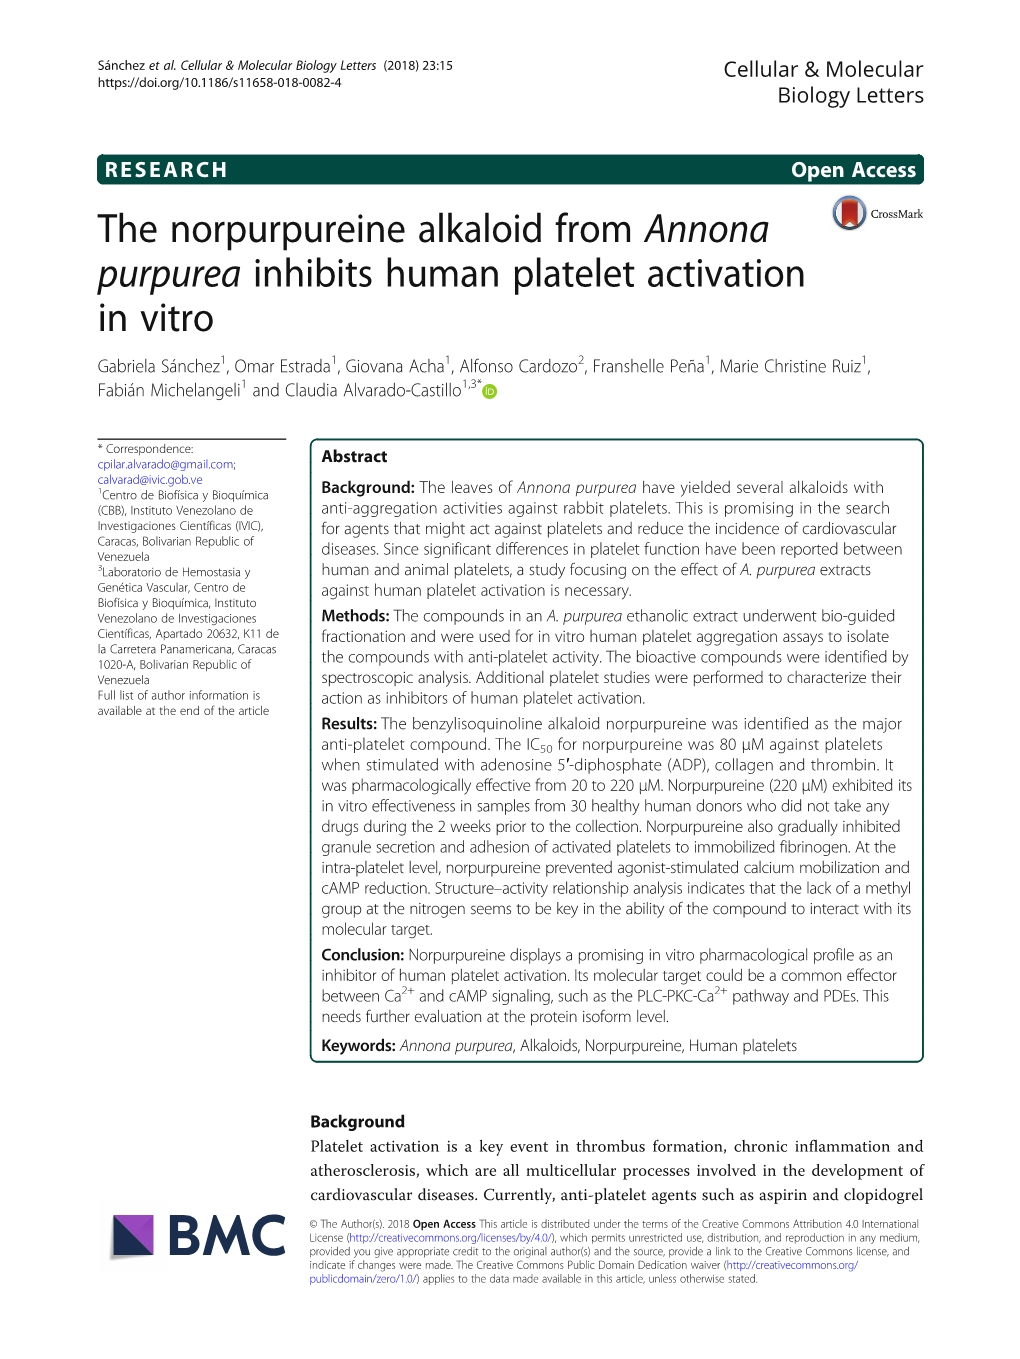 The Norpurpureine Alkaloid from Annona Purpurea Inhibits Human